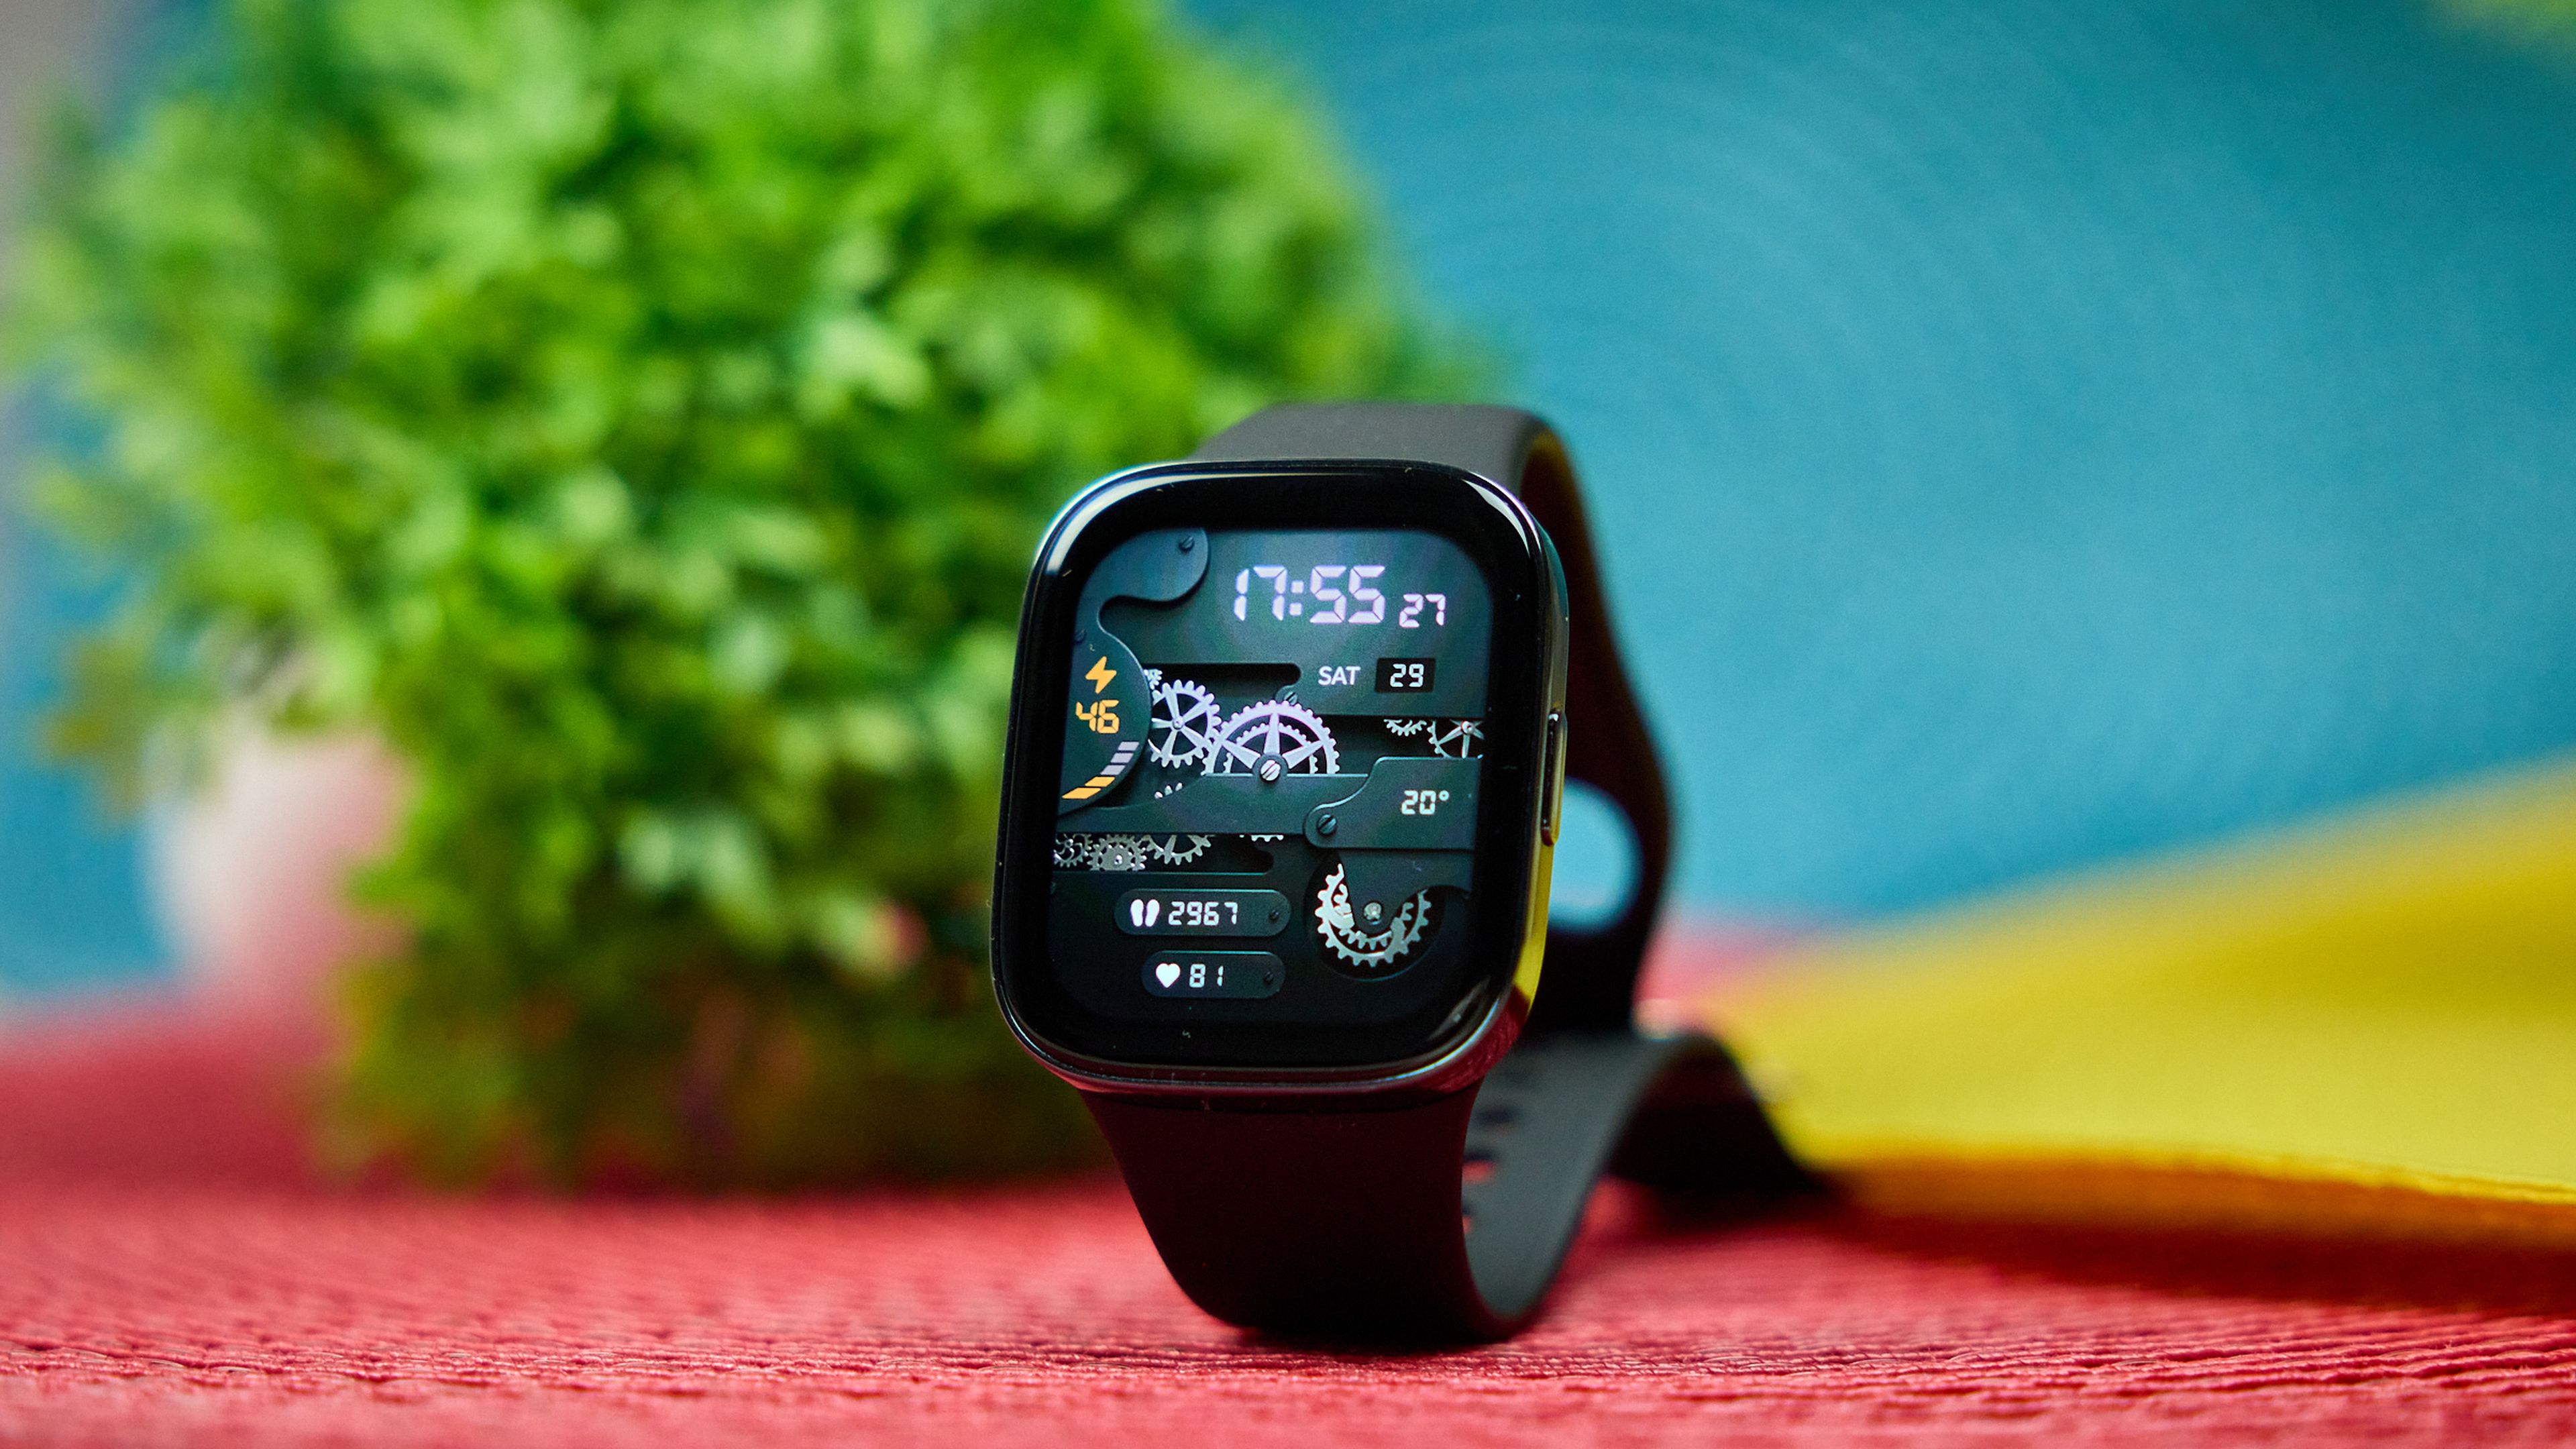 El nuevo reloj superventas de Xiaomi se llama Redmi Watch 3 Active y ya es  oficial a nivel Global: pantalla enorme, llamadas Bluetooth y batería para  rato